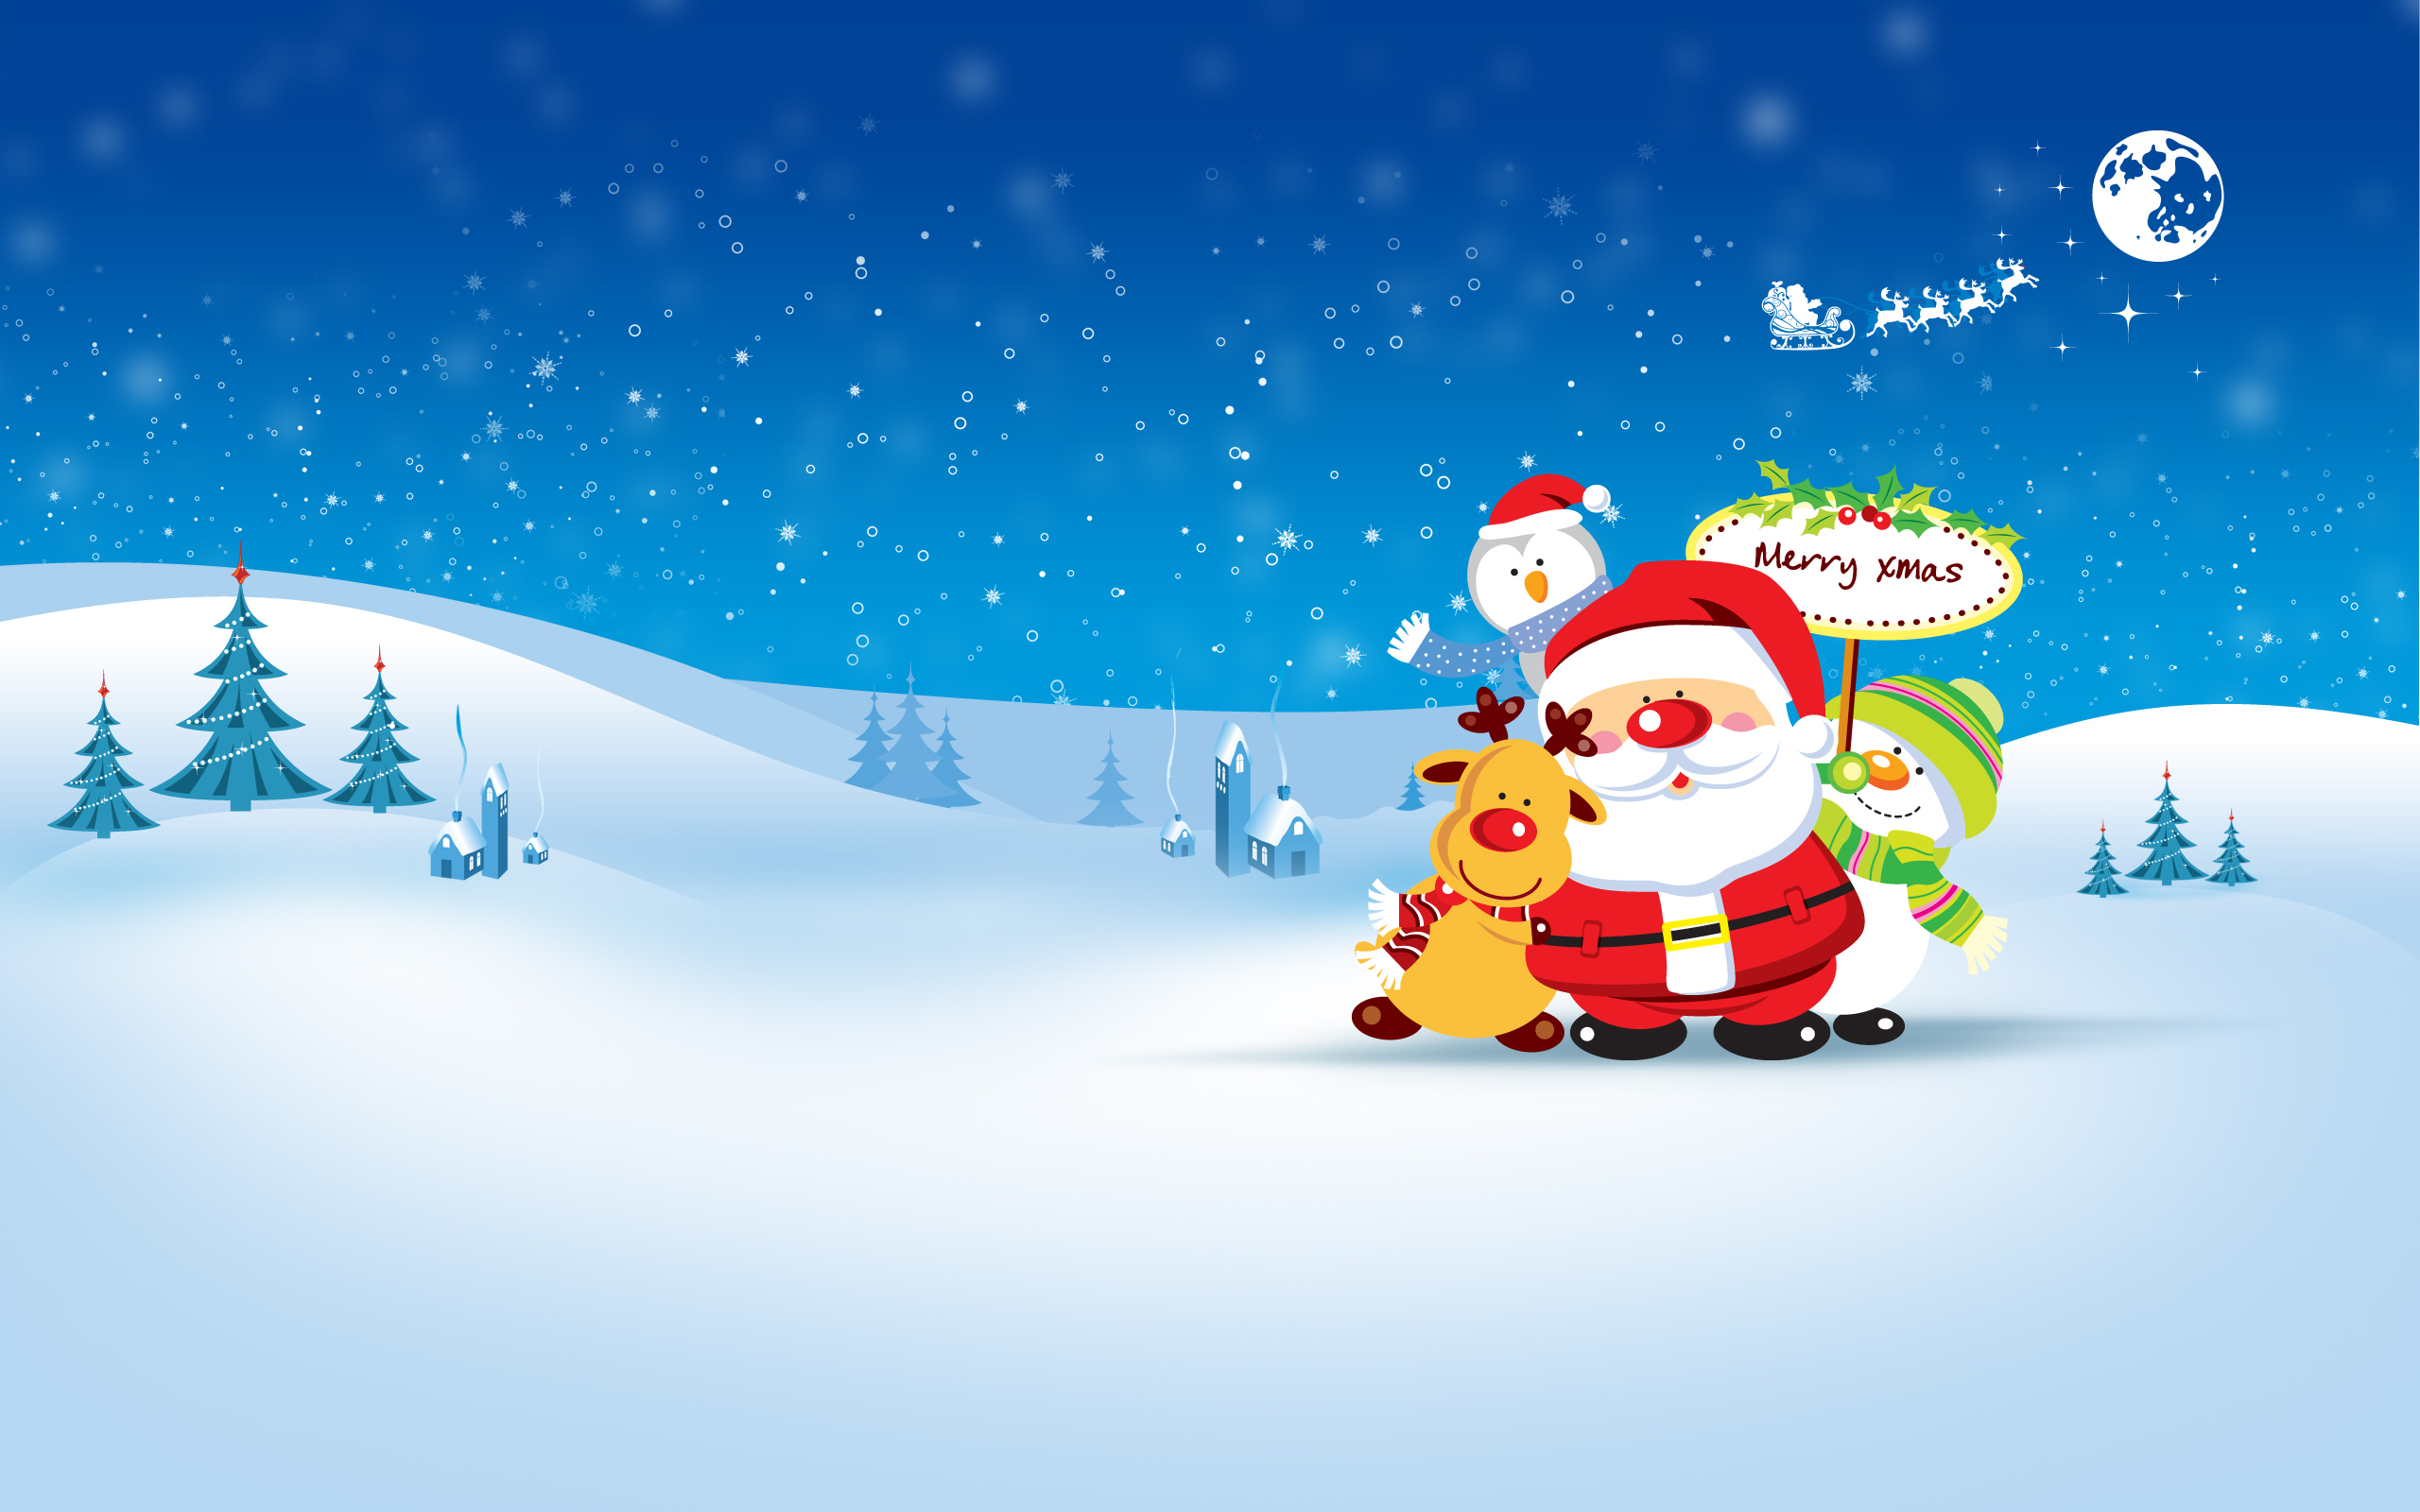 Популярные заставки и фоны Санта Клаус (Santa Claus) на компьютер